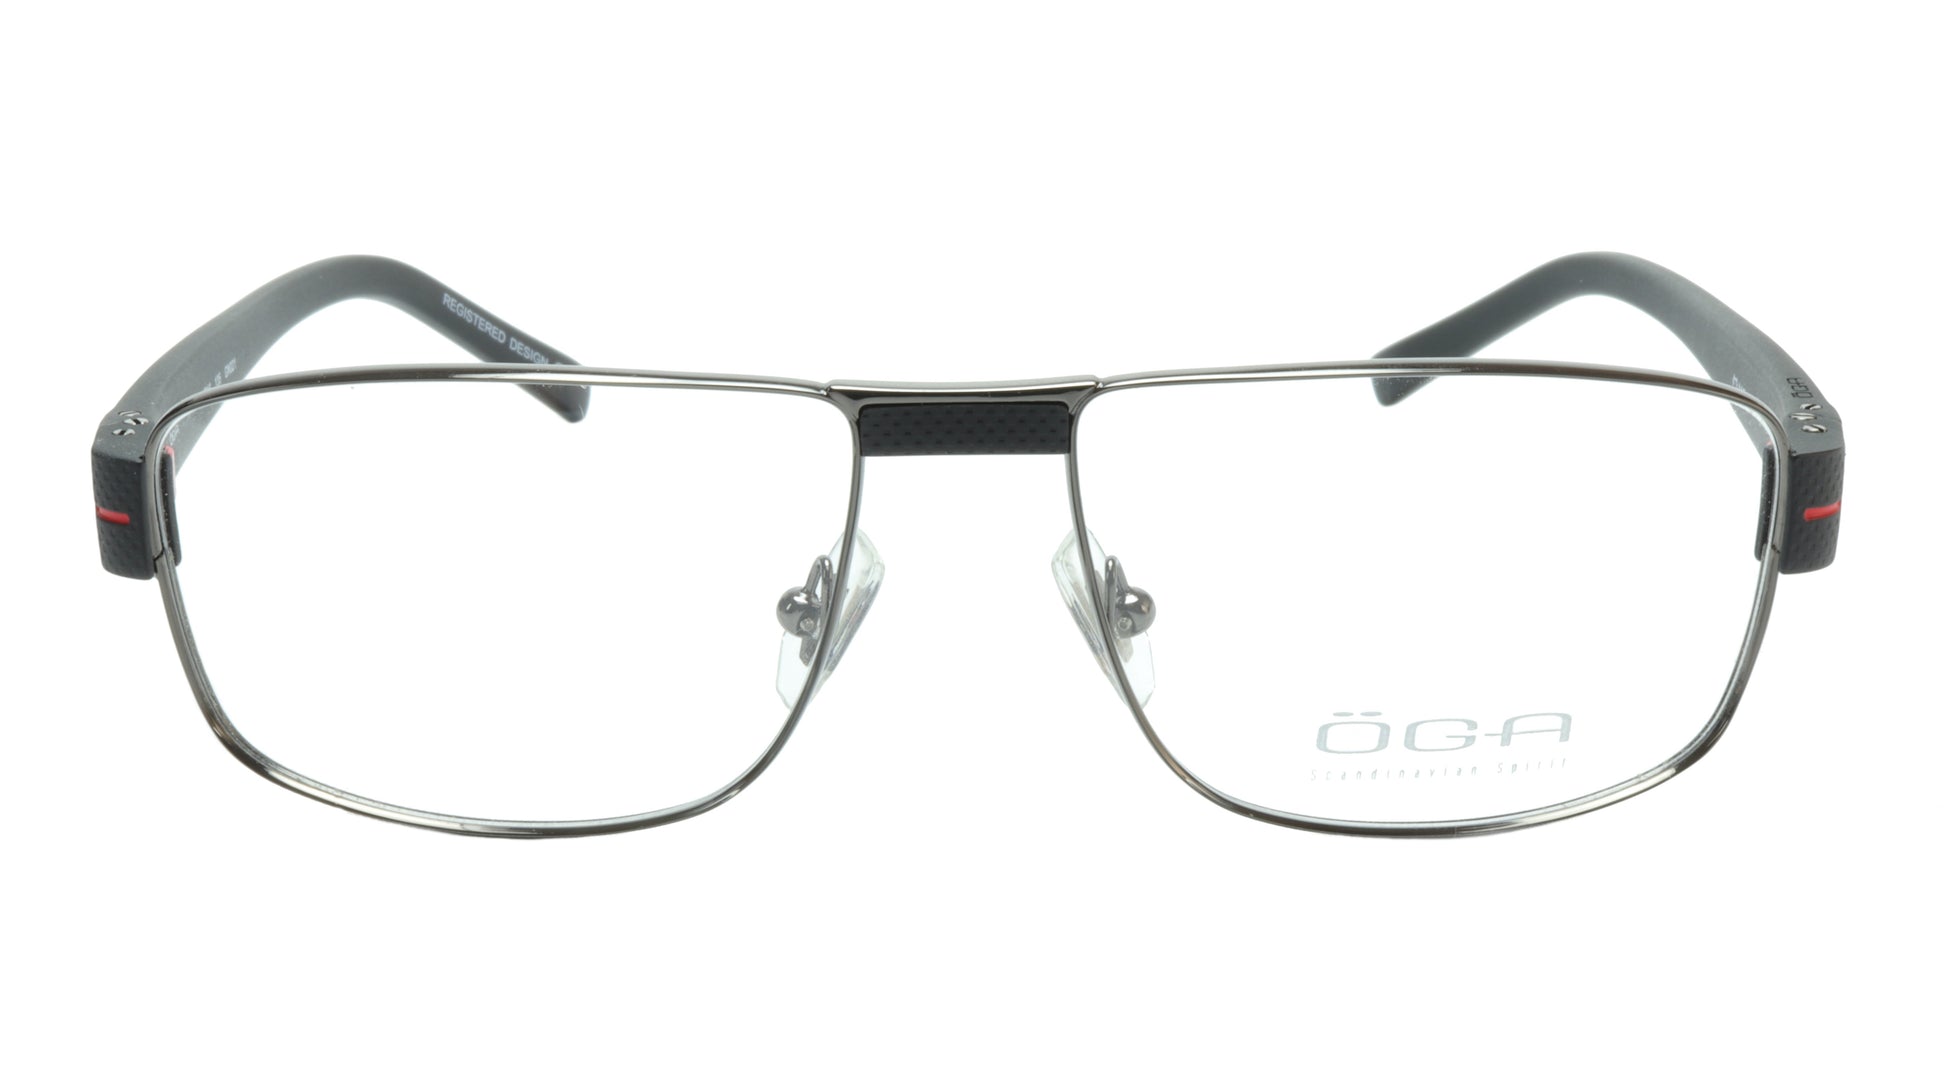 OGA Morel Eyeglasses Frame 7918O GN021 Metal Acetate Red France 55-16-135, 37 - Frame Bay